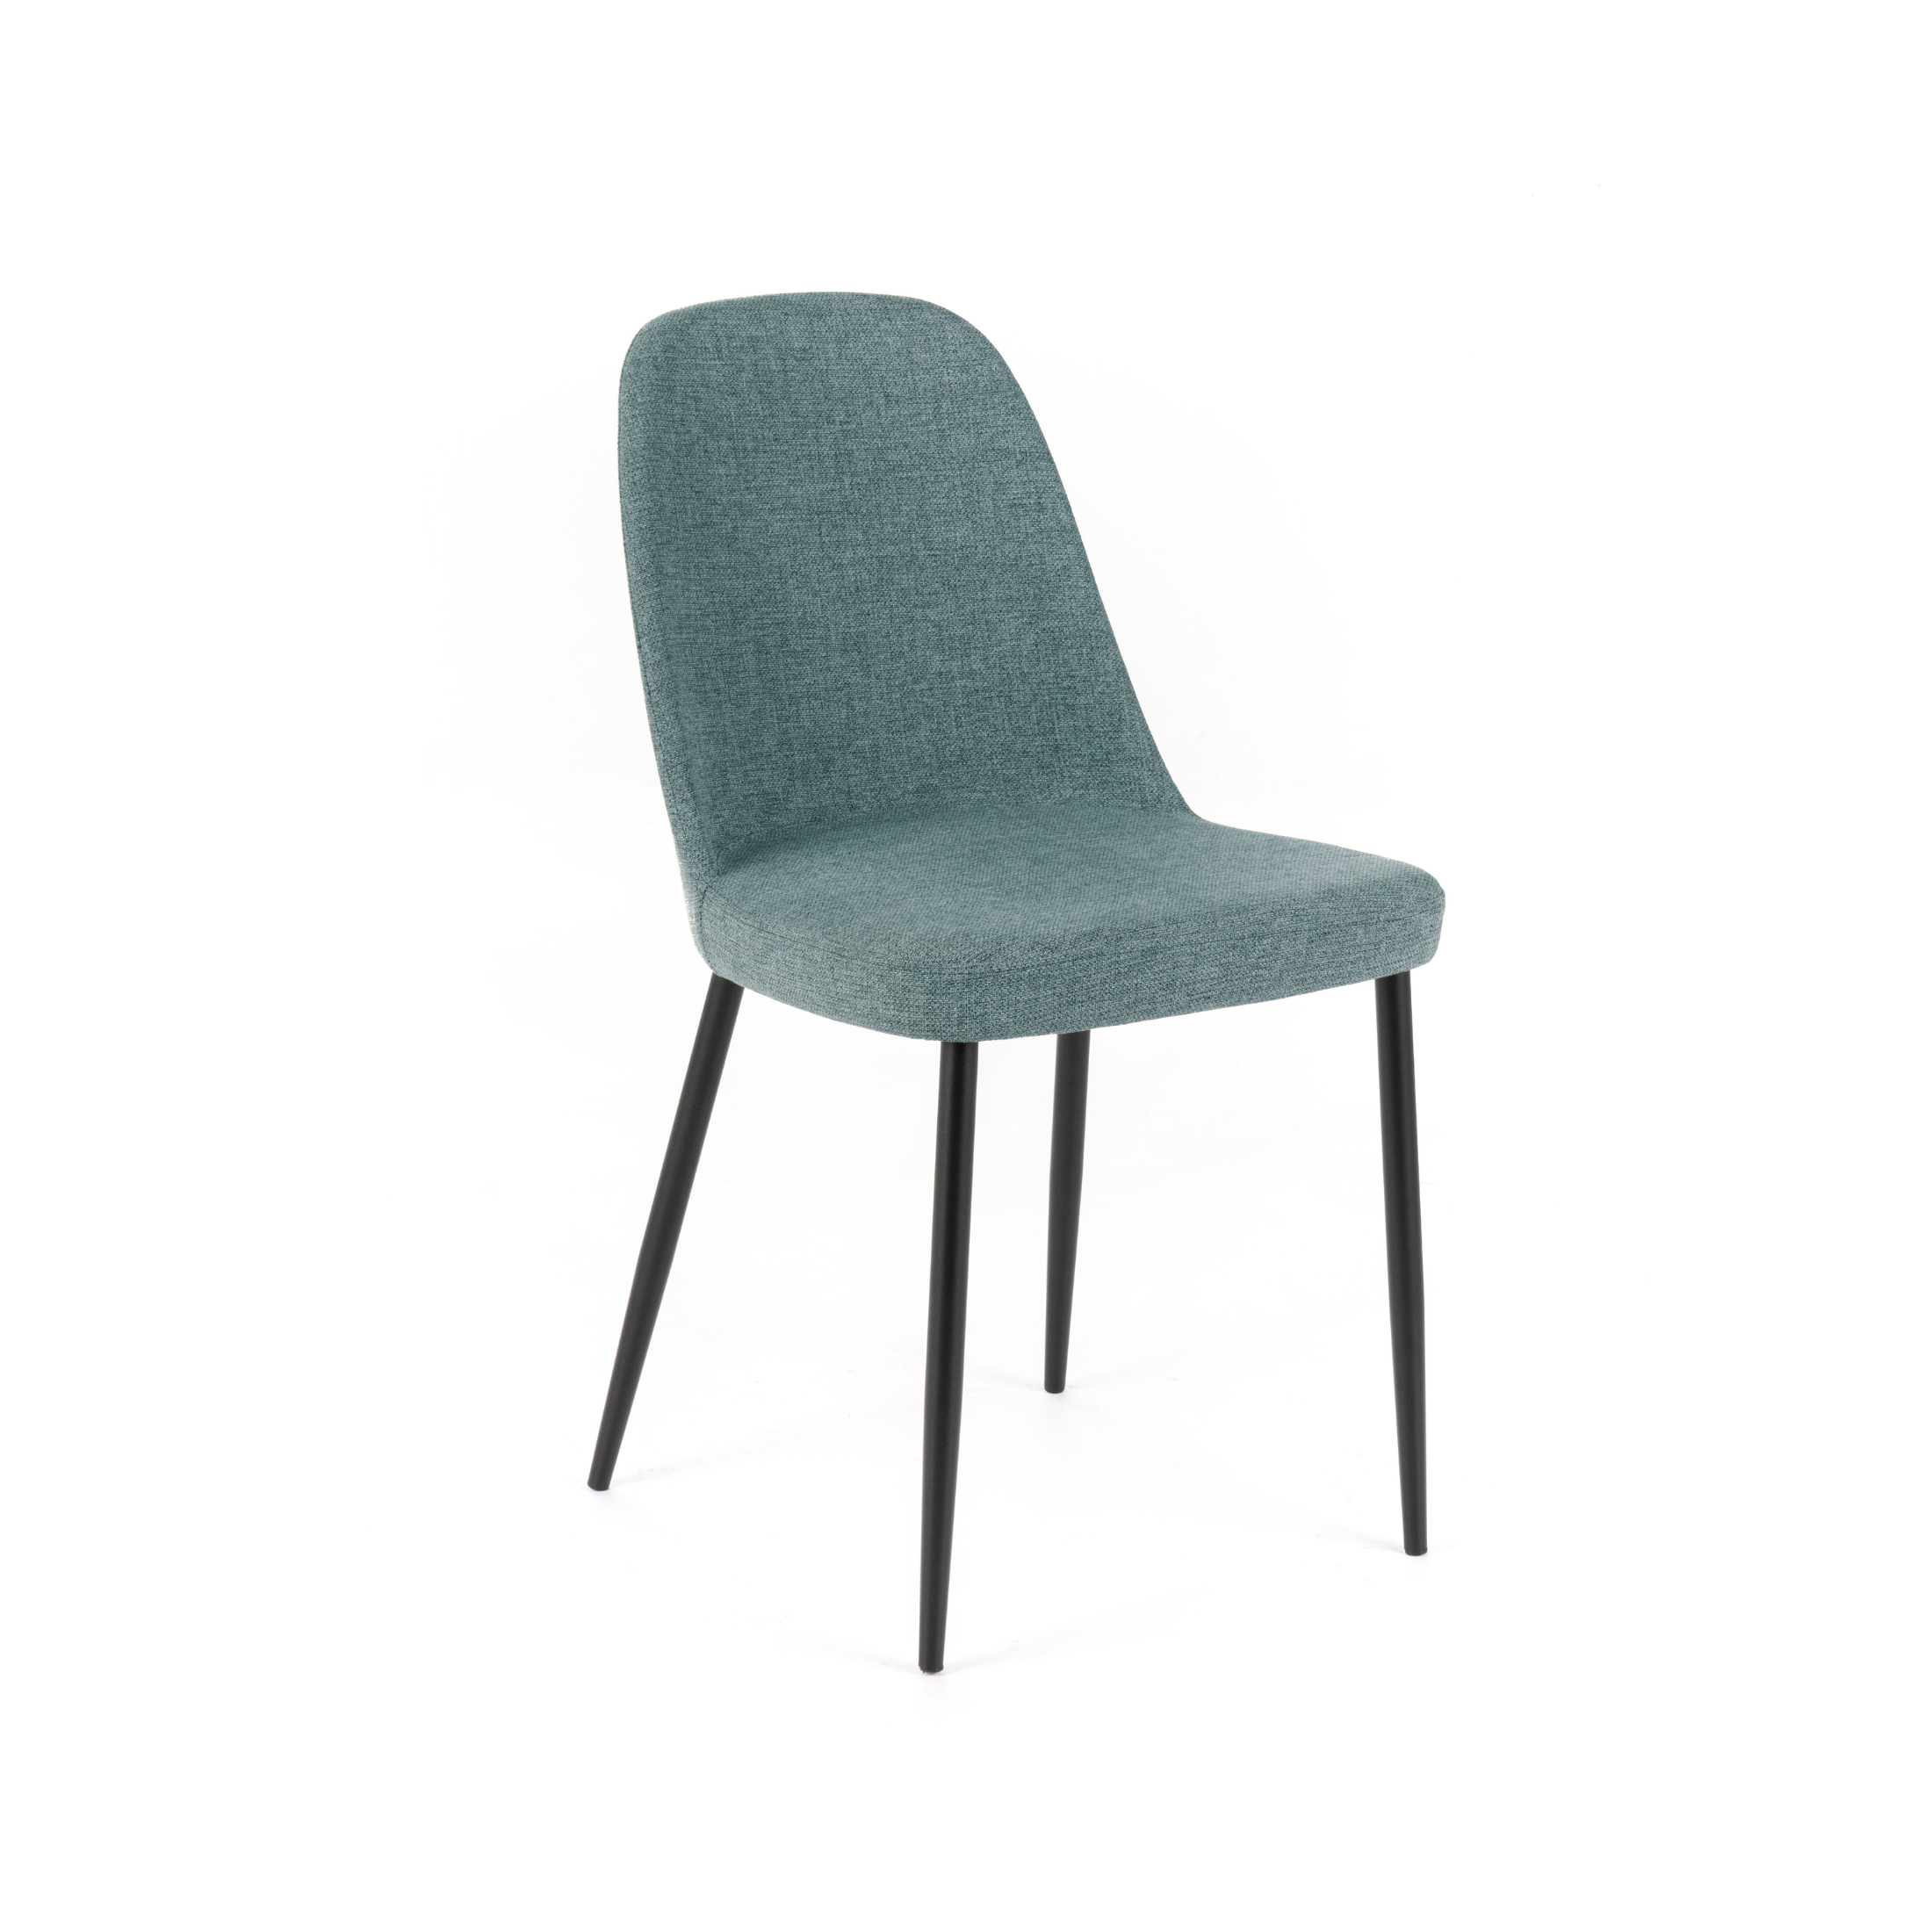 Chaise en tissu "Tamara", fauteuil moderne et élégant 46x55 cm 85h